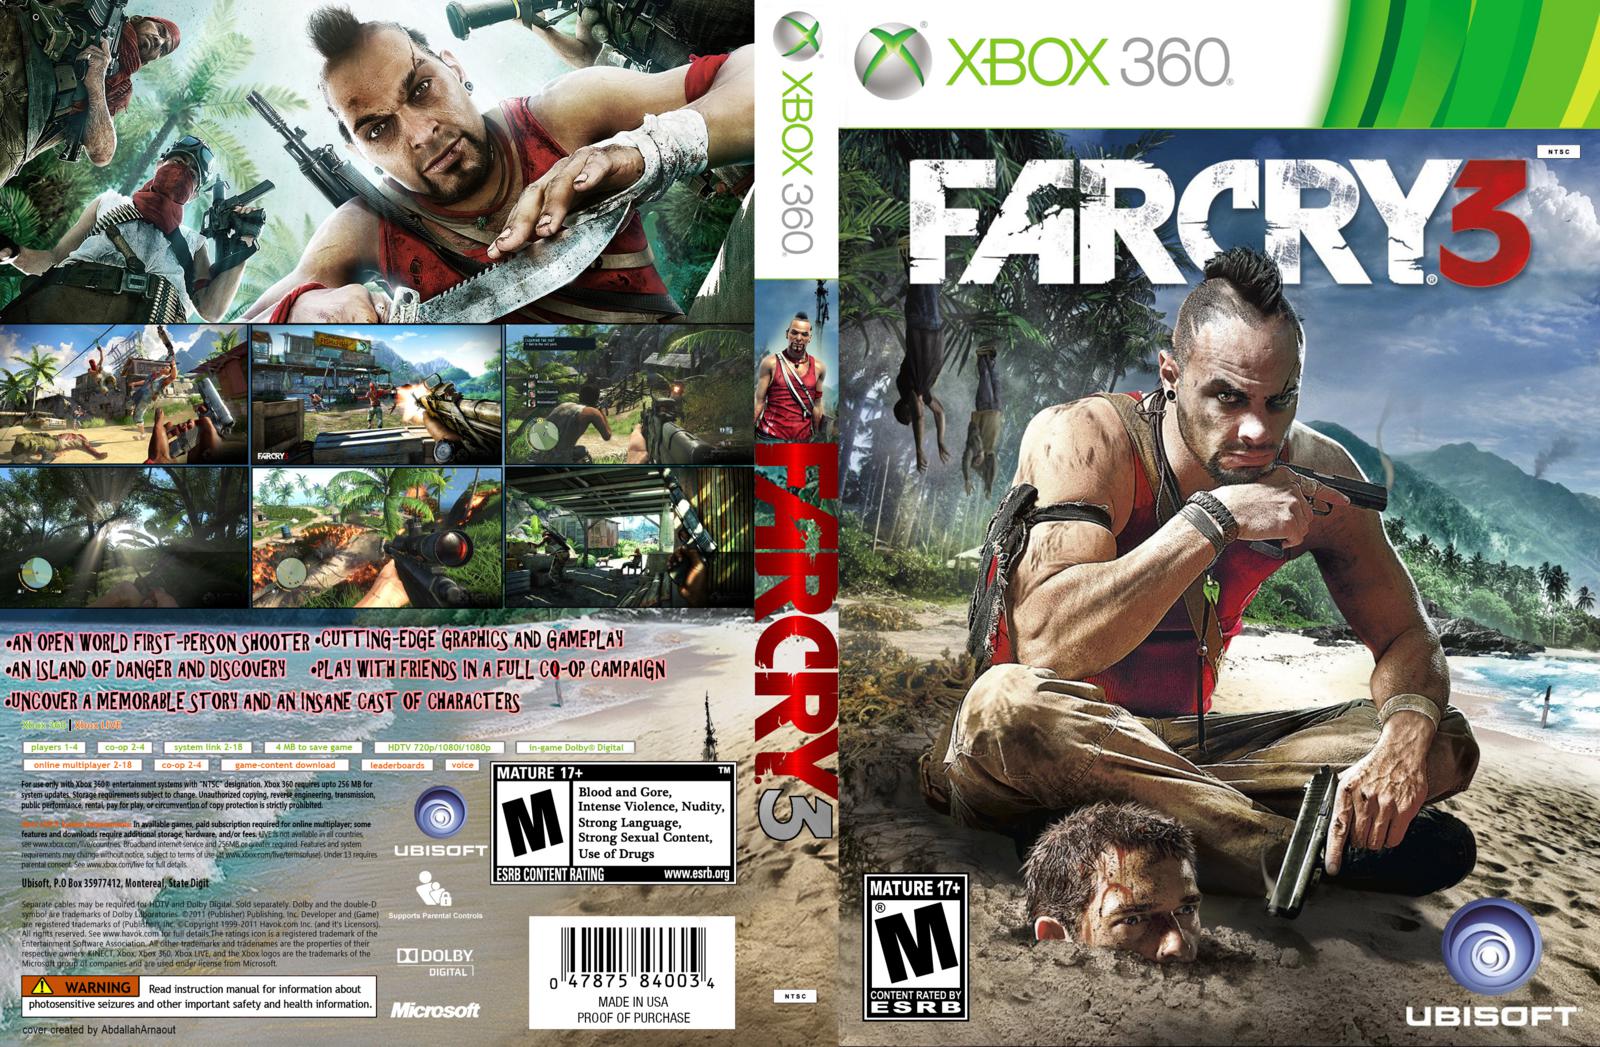 Игра far xbox. Фар край 3 на хбокс 360. Far Cry 3 Xbox 360 диск. Фар край 3 Икс бокс 360. Xbox 360 far Cry 3 русская версия диск.